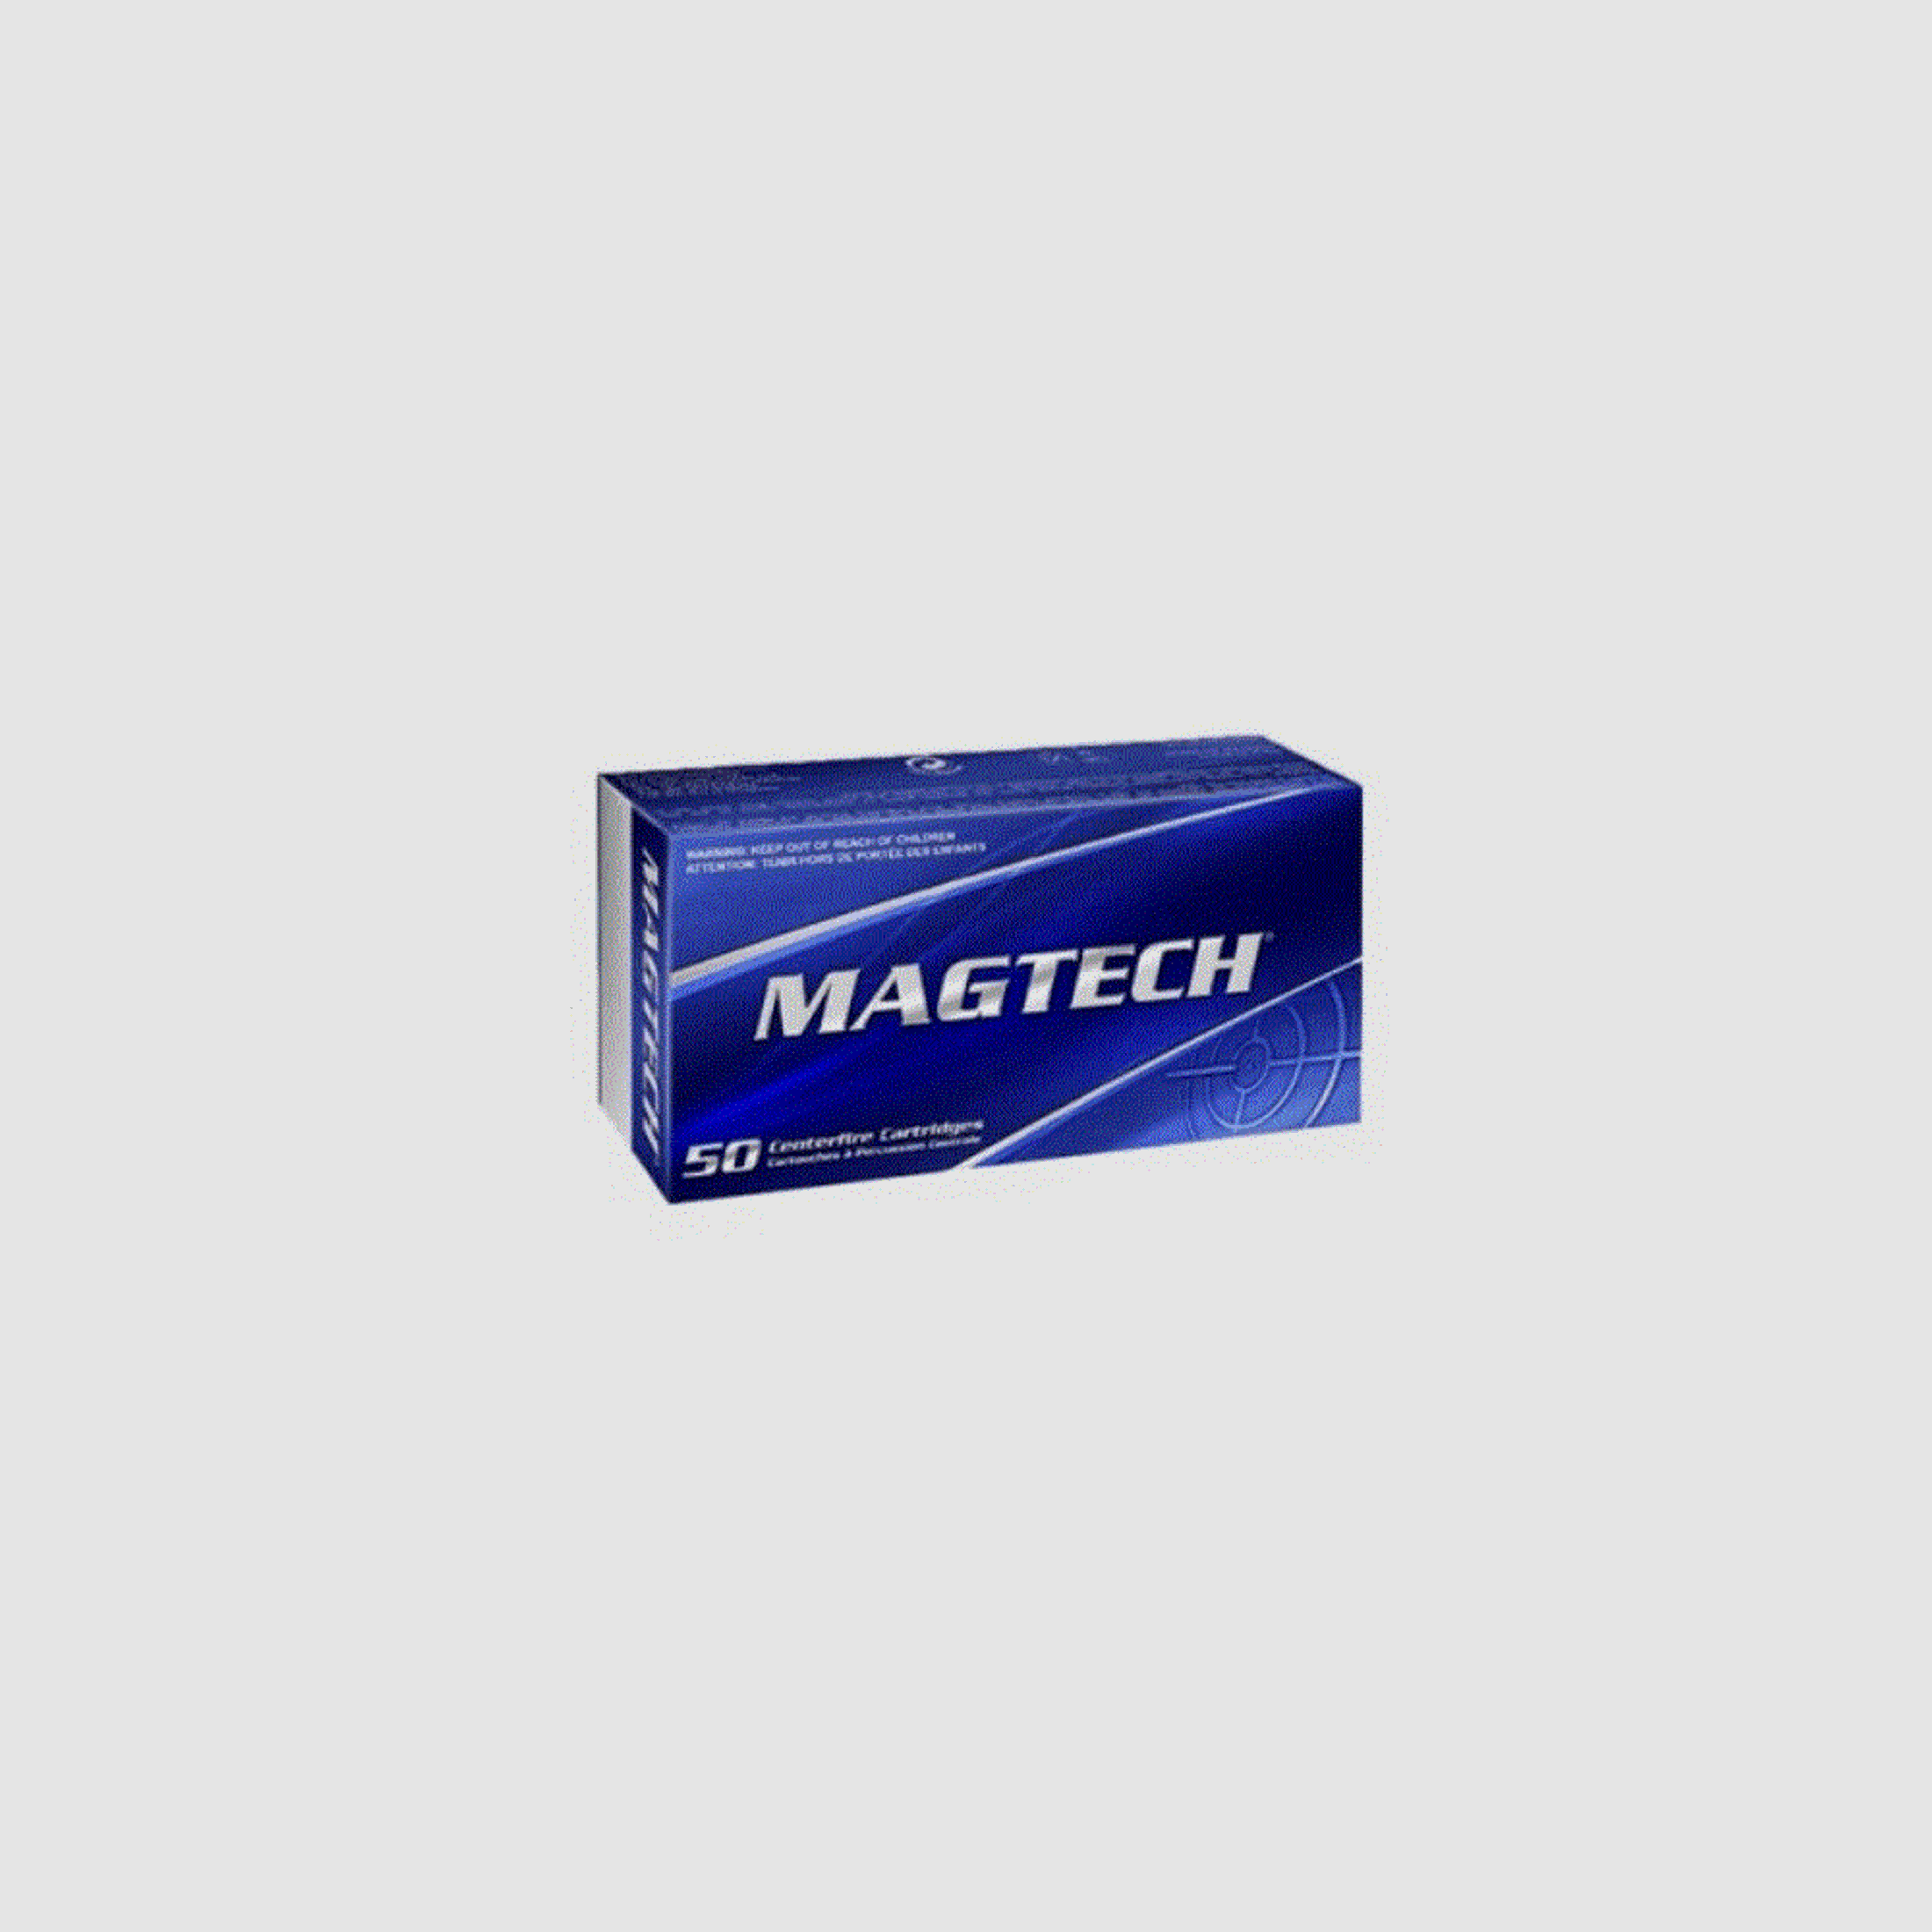 Magtech TMF 158grs .38 Special 50 Patronen